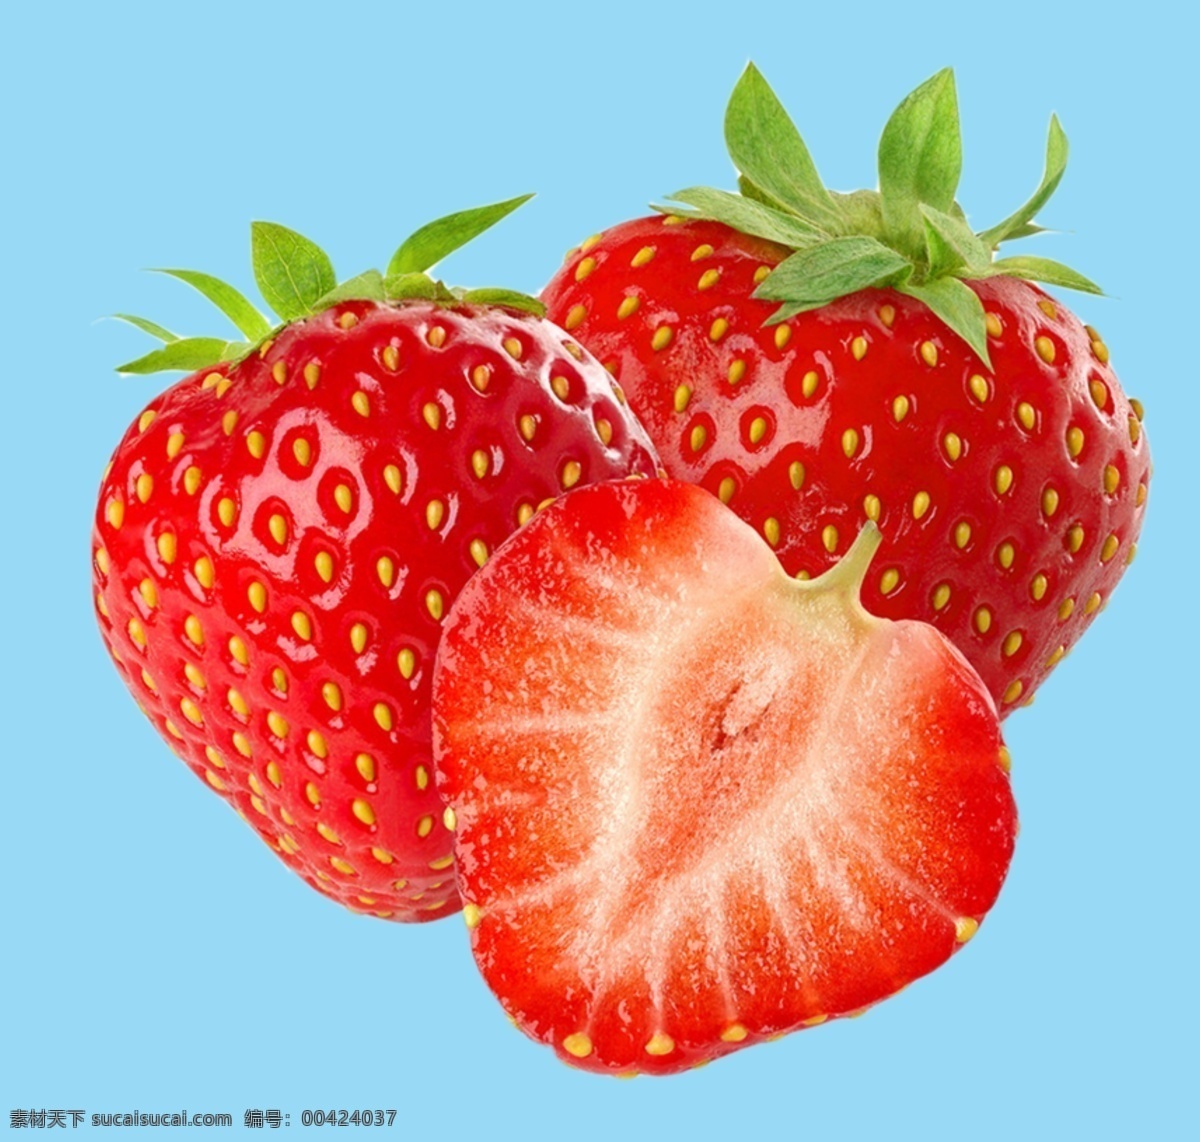 水果 草莓图片 草莓 水果素材 草莓素材